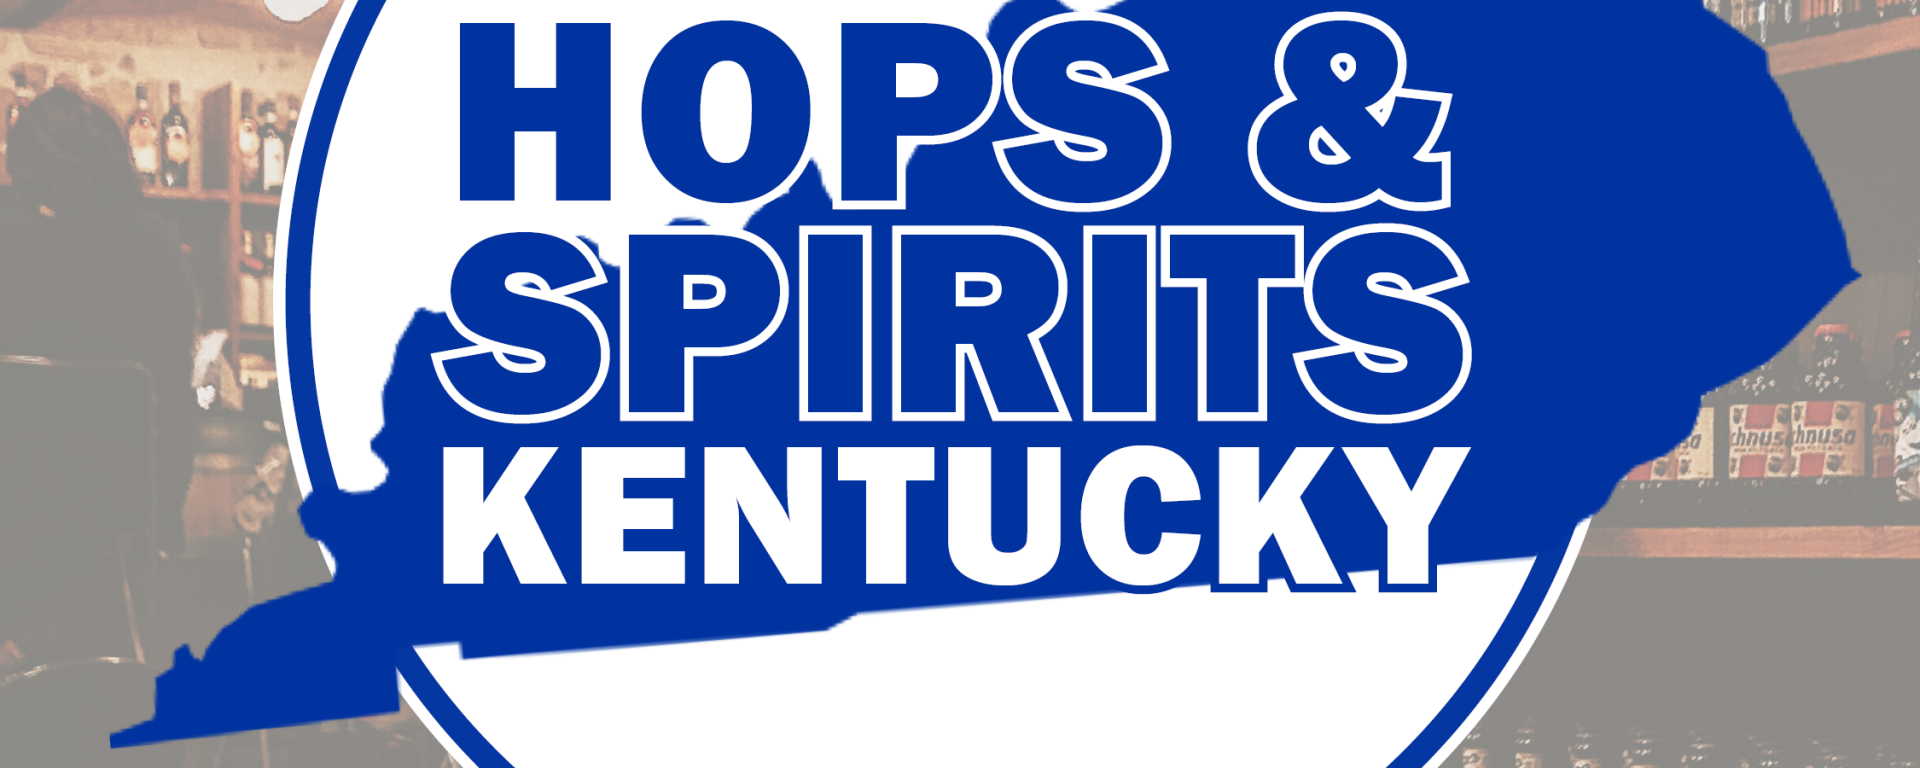 Hops & Spirits Kentucky